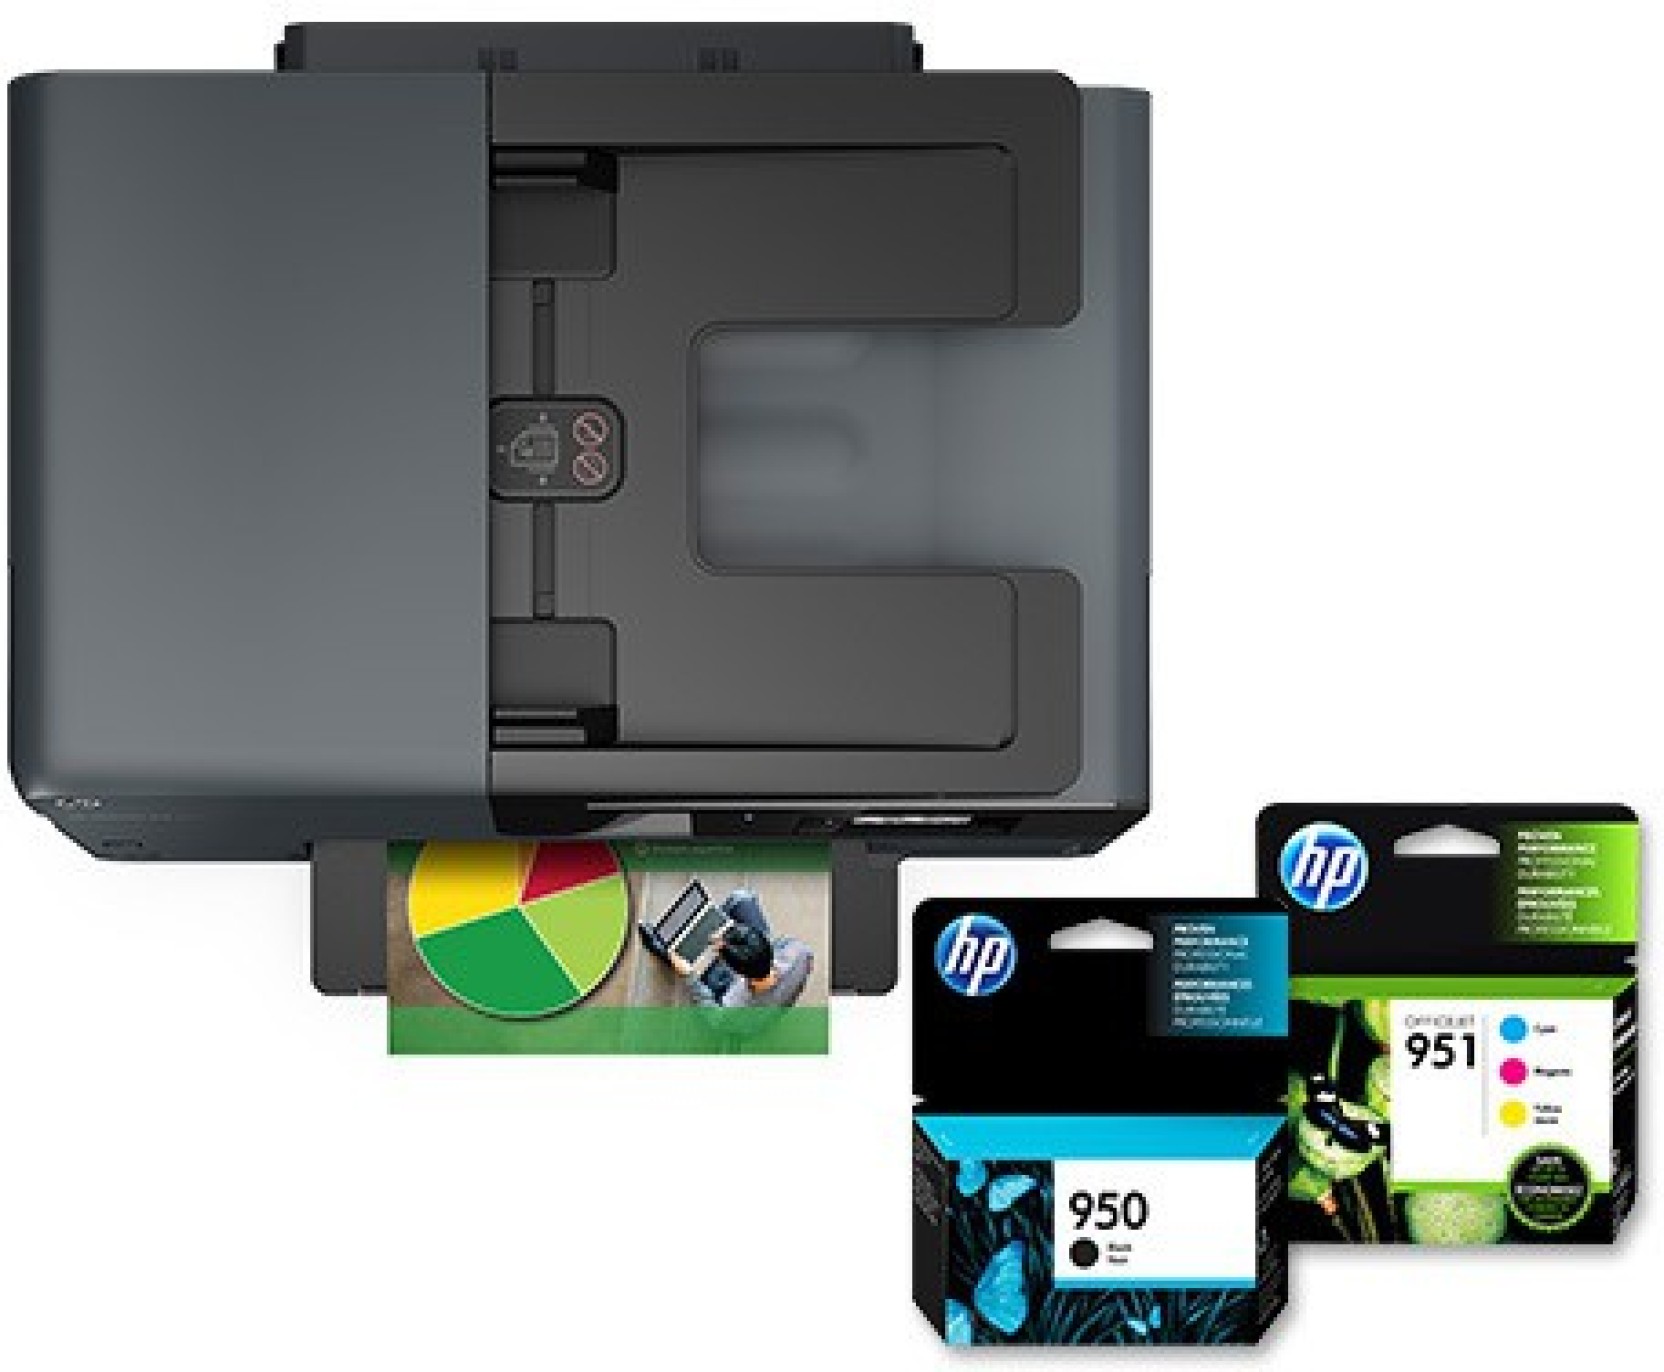 HP Officejet Pro 8610 e Multi-function Wireless Printer ...